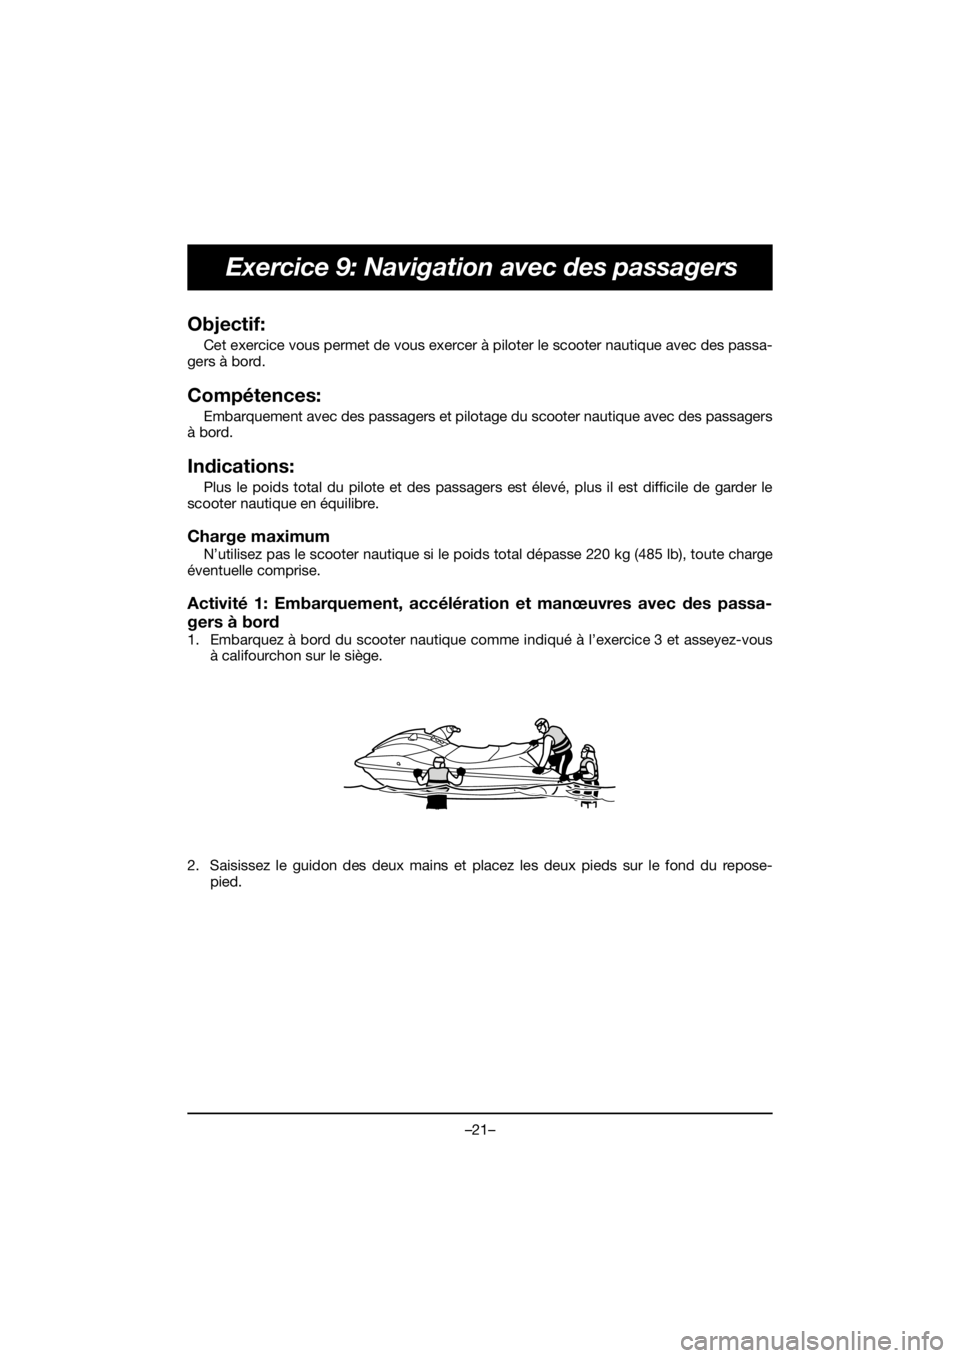 YAMAHA EXR 2020  Bruksanvisningar (in Swedish) –21–
Exercice 9: Navigation avec des passagers
Objectif: 
Cet exercice vous permet de vous exercer à piloter le scooter nautique avec des passa-
gers à bord.
Compétences: 
Embarquement avec des